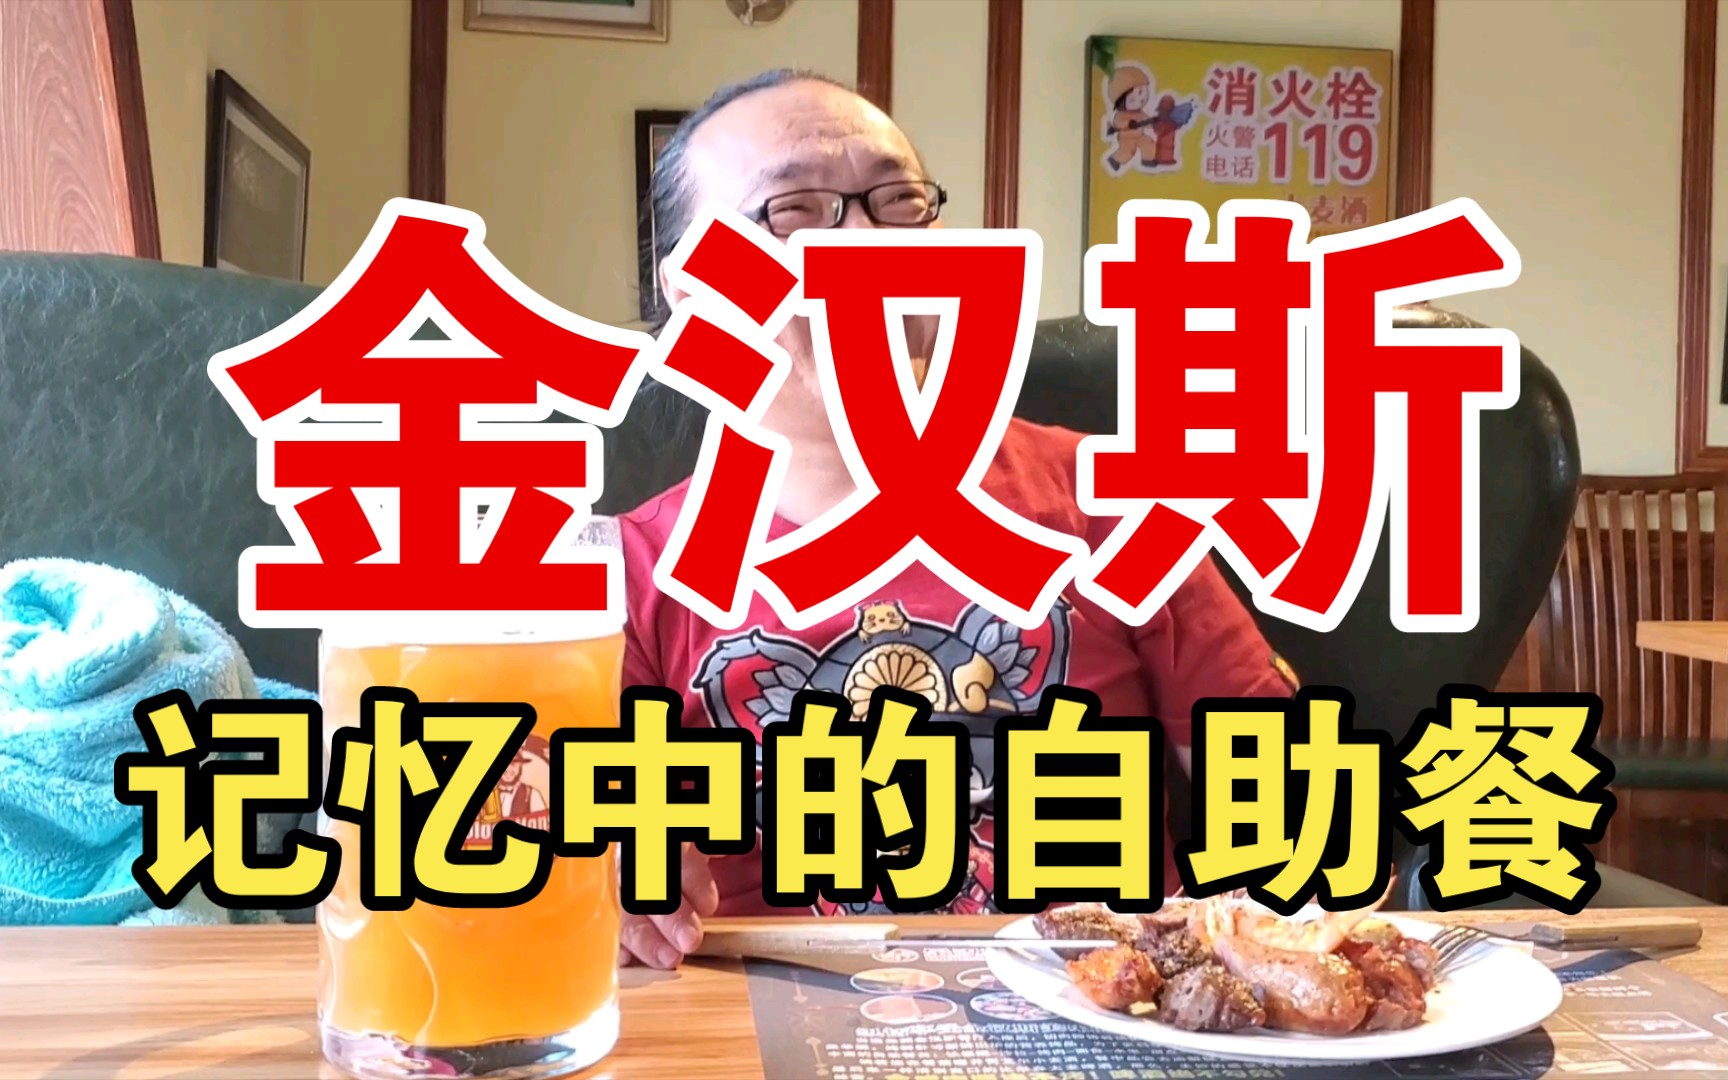 中国第一代自助餐的王者，肉食爱好者的天堂，一代人的回忆，哈尔滨老牌自助